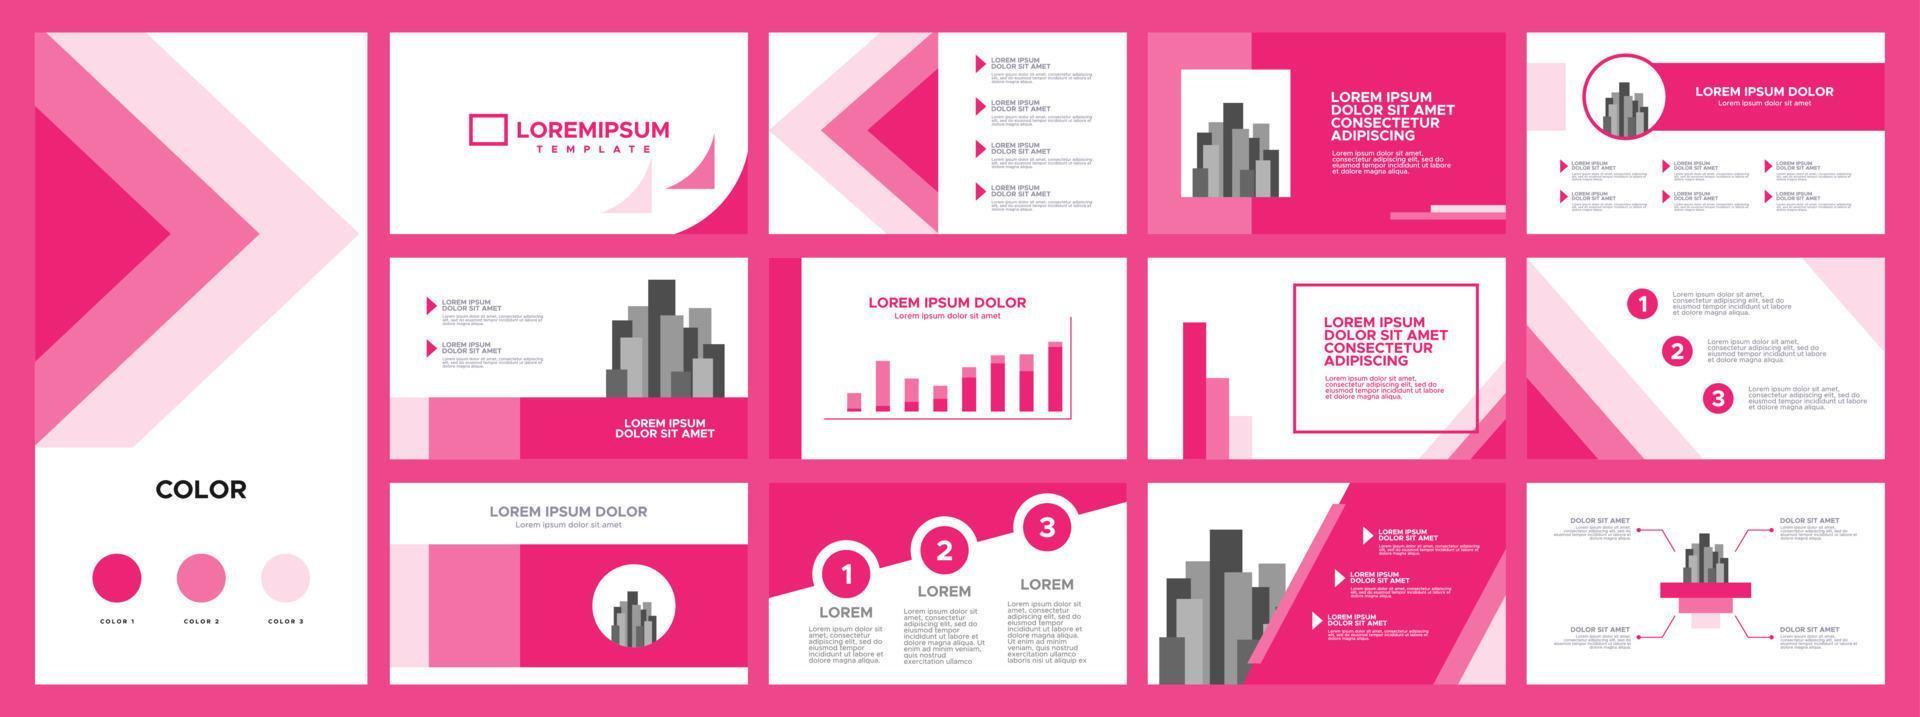 affärspresentationsmallar set. Använd för företags årsredovisning, keynote, broschyrdesign, webbplatsreglage, målsida, företagsprofil, banner med rosa färg. vektor